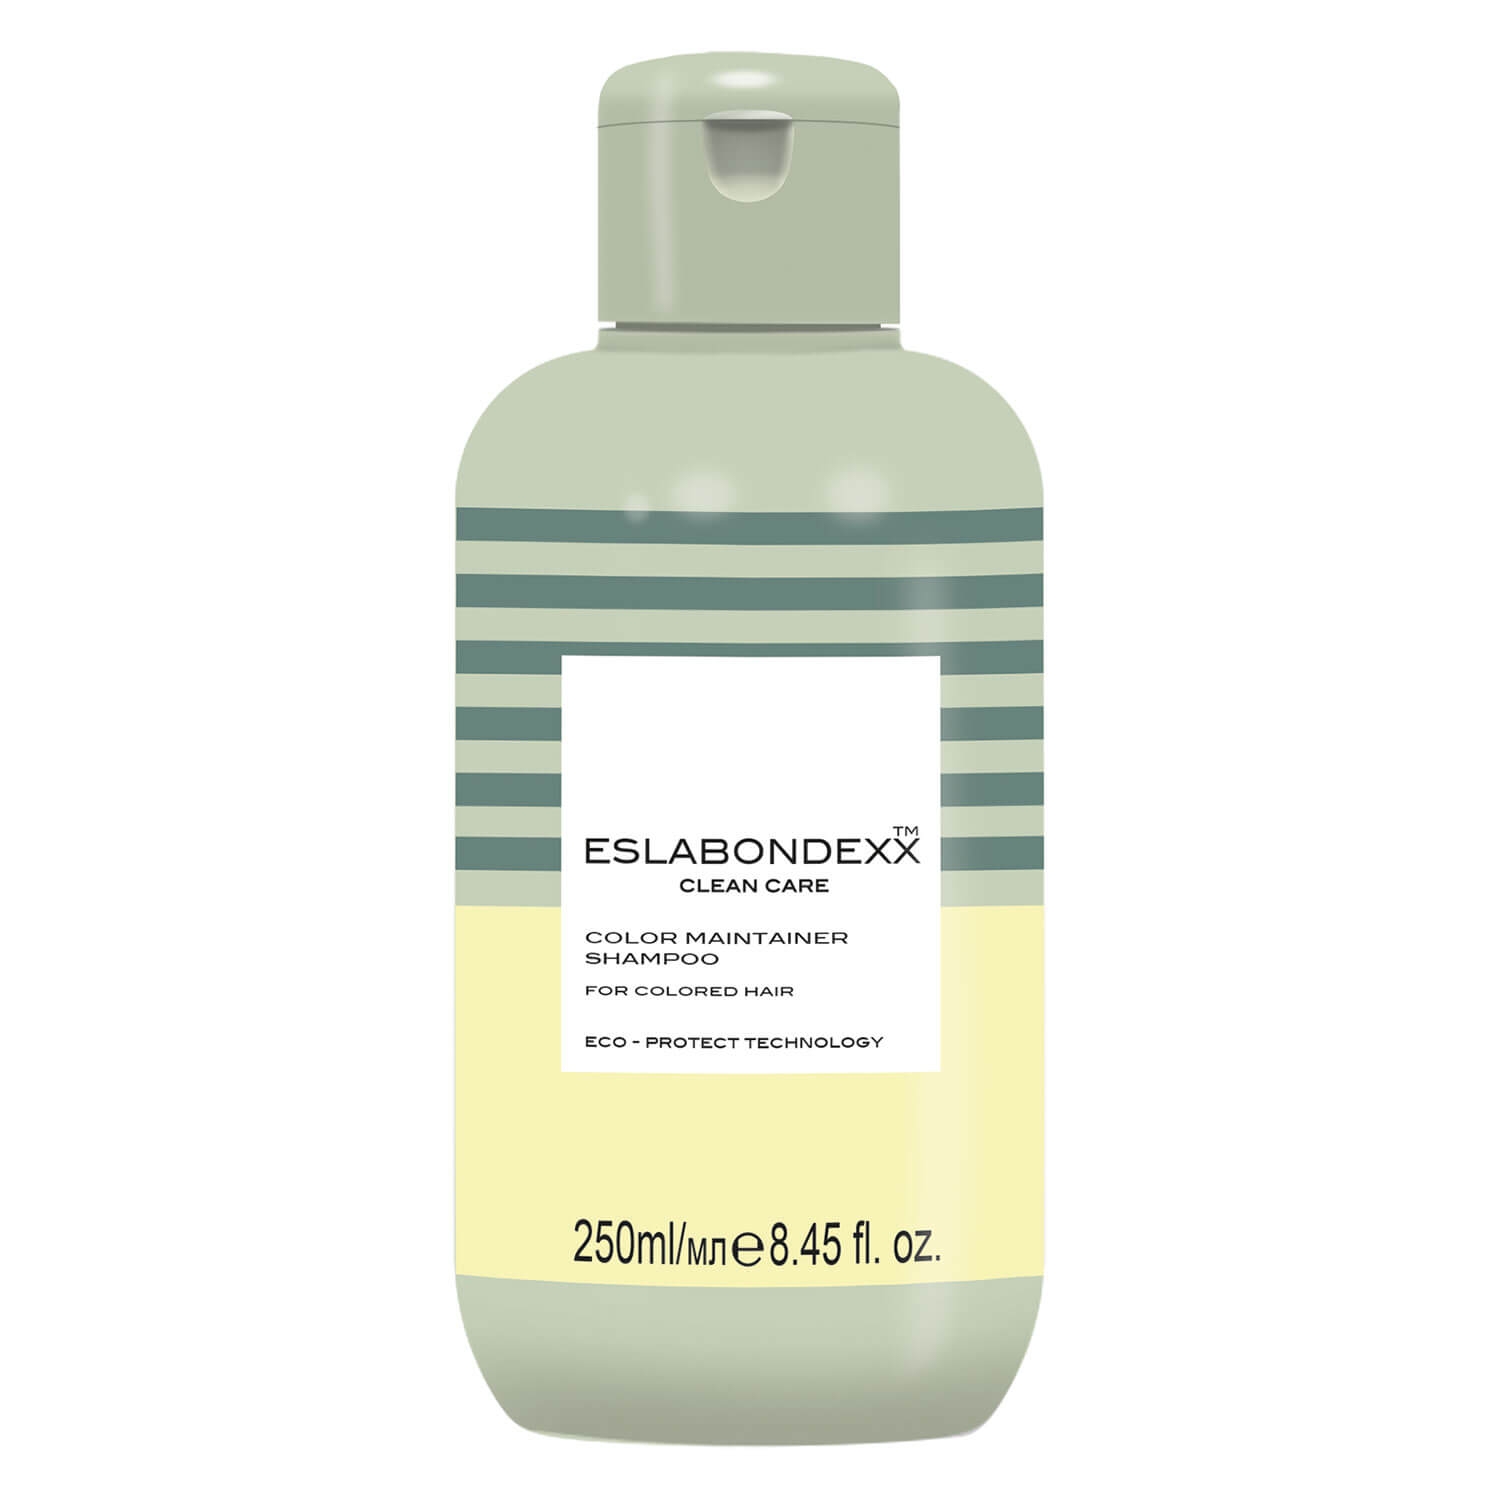 Produktbild von Eslabondexx Clean Care - Color Maintainer Shampoo